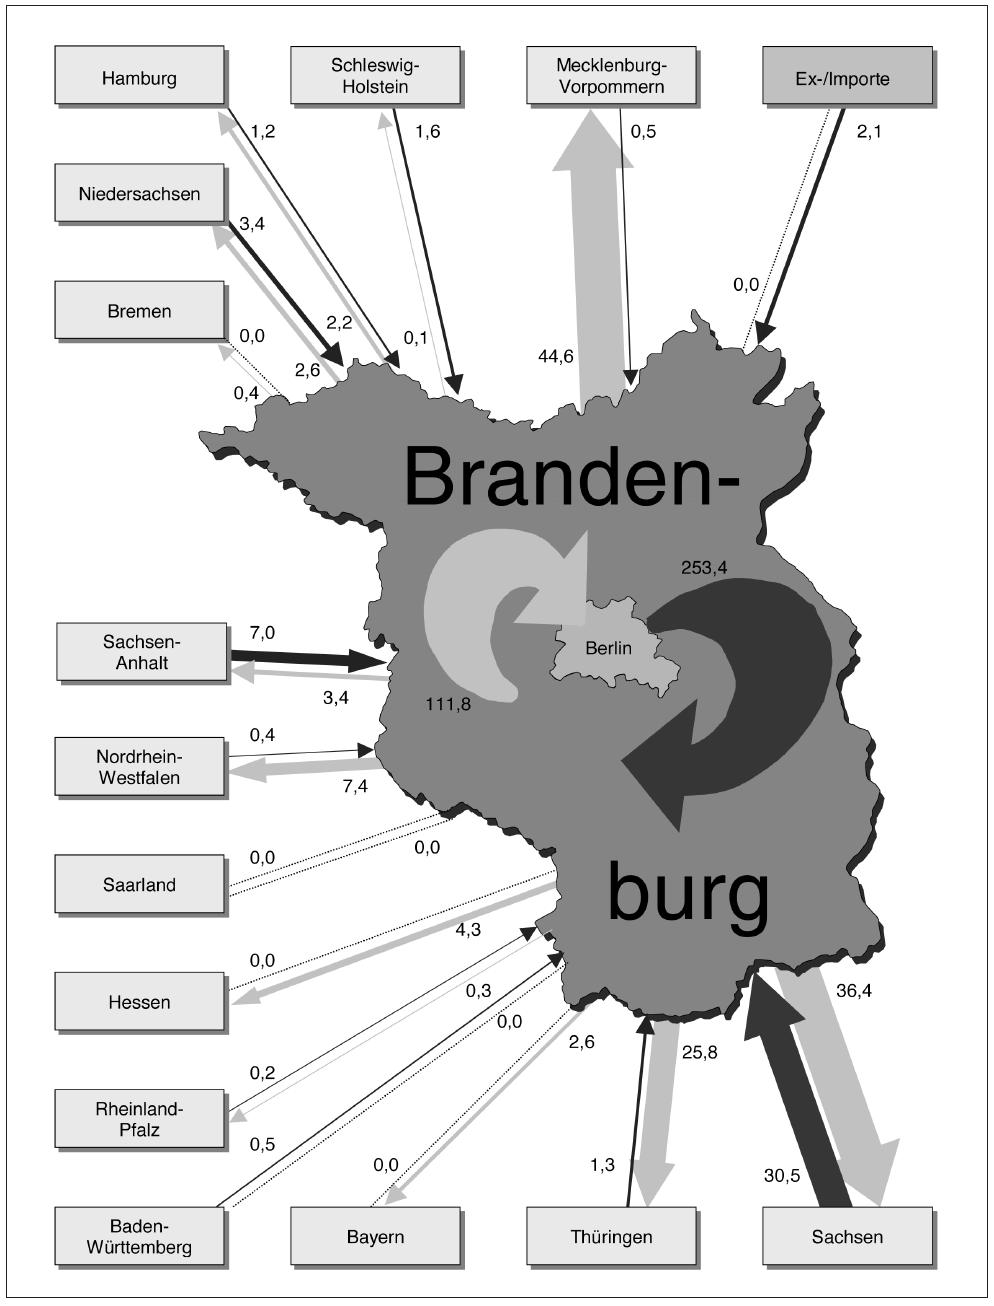 Bilanz der Ströme besonders überwachungsbedürftiger Abfälle zur Beseitigung zwischen Brandenburg und den anderen Bundesländern sowie dem Ausland im Jahr 2003 (Angaben in 1.000 Tonnen)